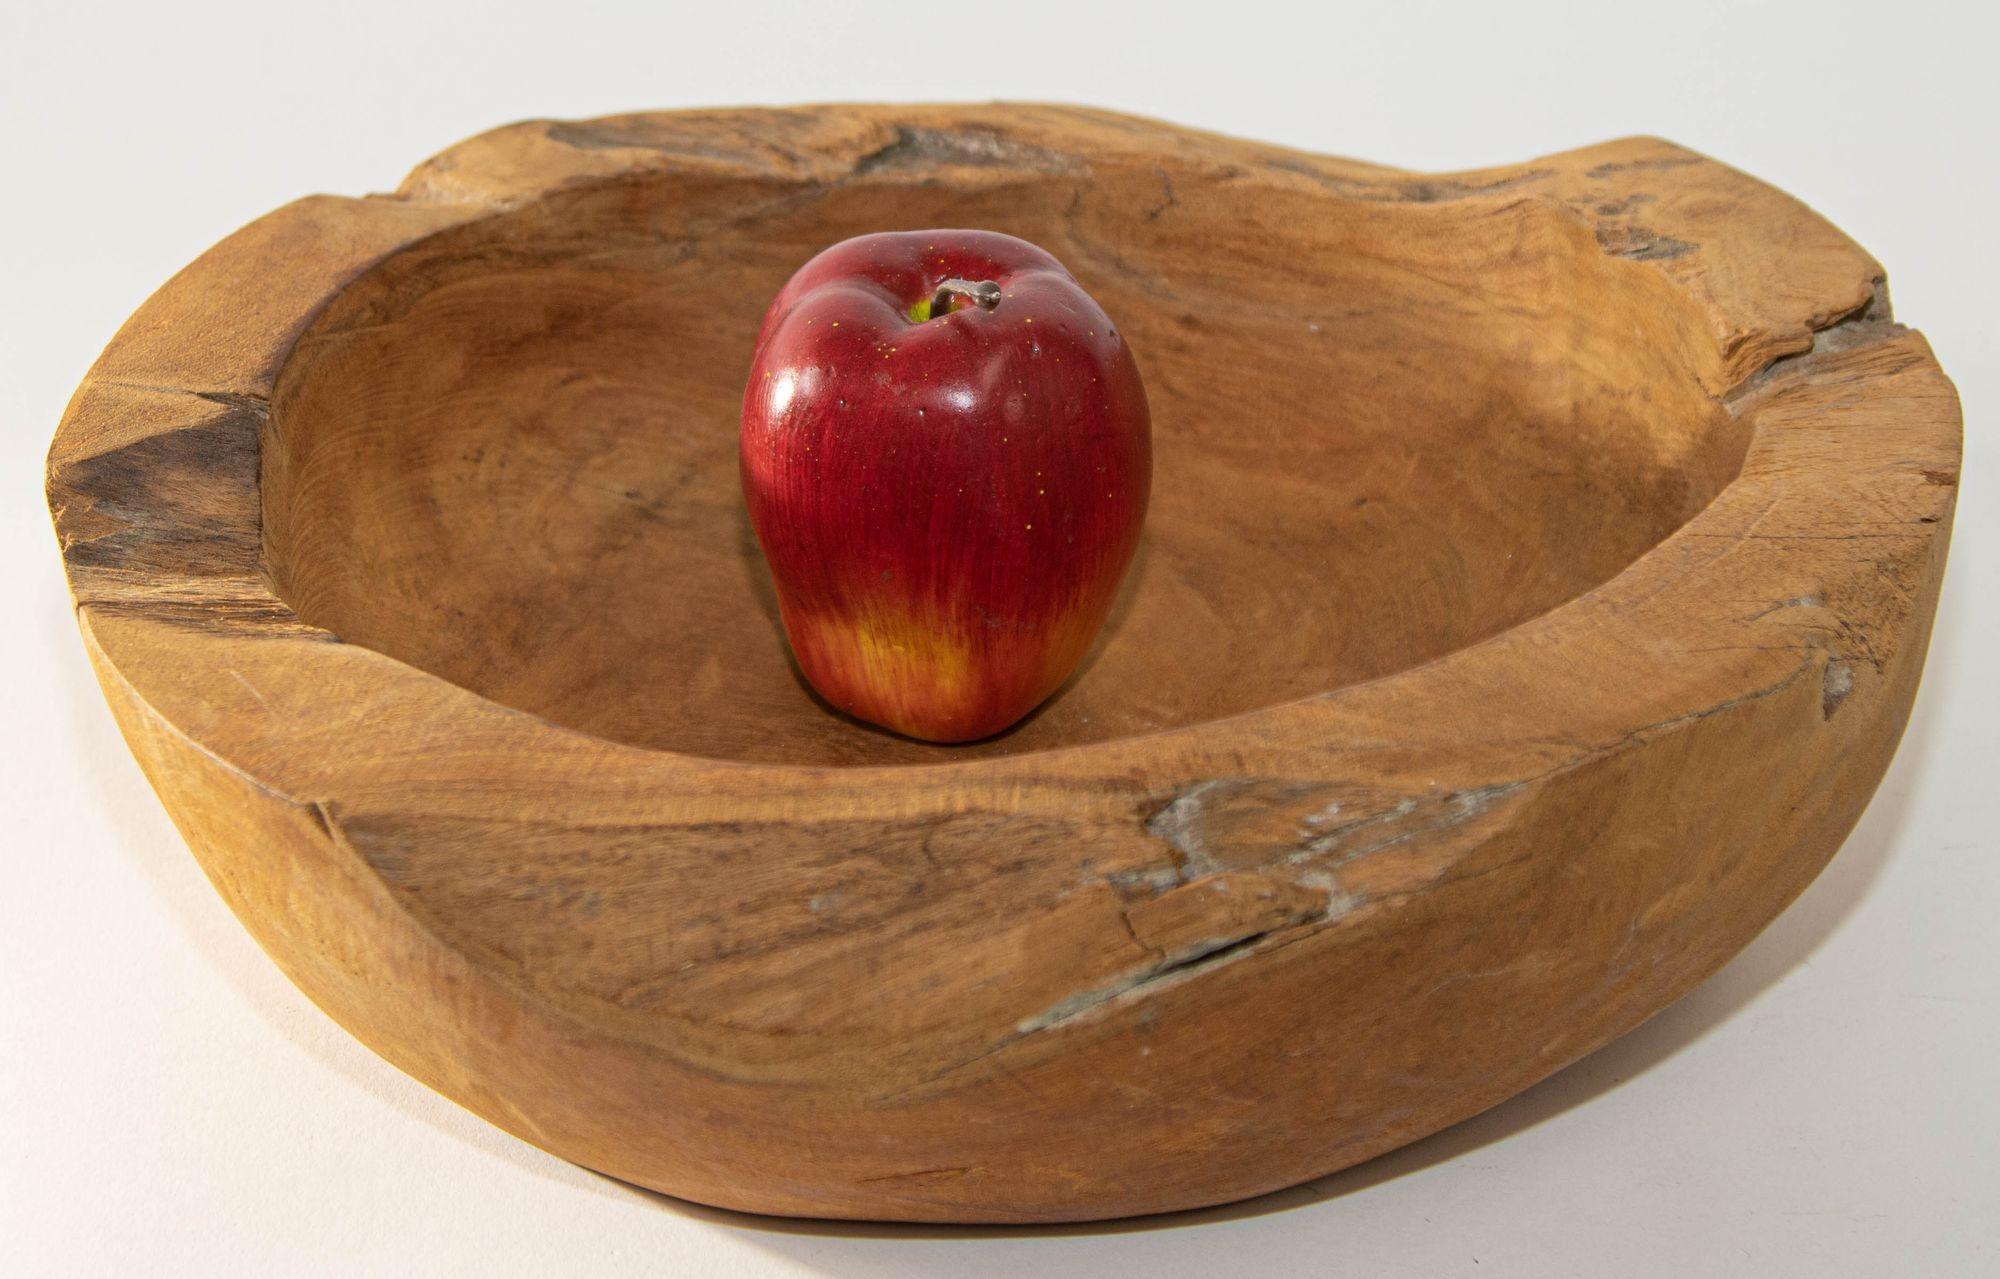 Vintage Organic Wood Root Bowl Natural Free Form Live Edge Sculptural Teak Bowl.
Bol sculptural en bois organique naturel à bord vif et à forme libre.
Coupe à fruits en bois de teck biologique sculptée à la main.
Bol décoratif en bois de racine